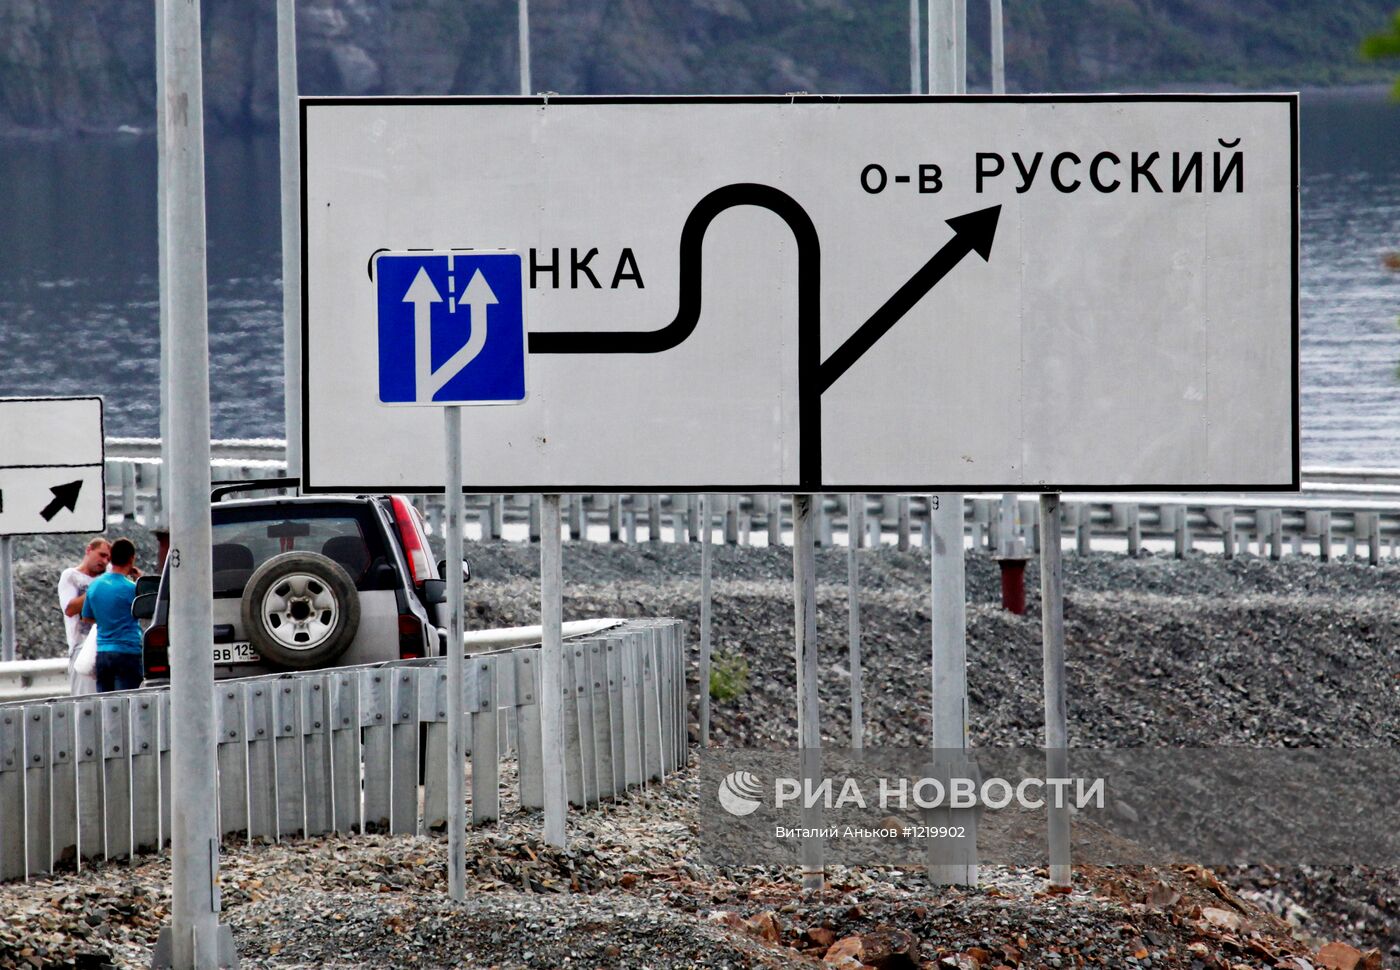 Пропускной режим на острове Русский, где пройдет саммит АТЭС